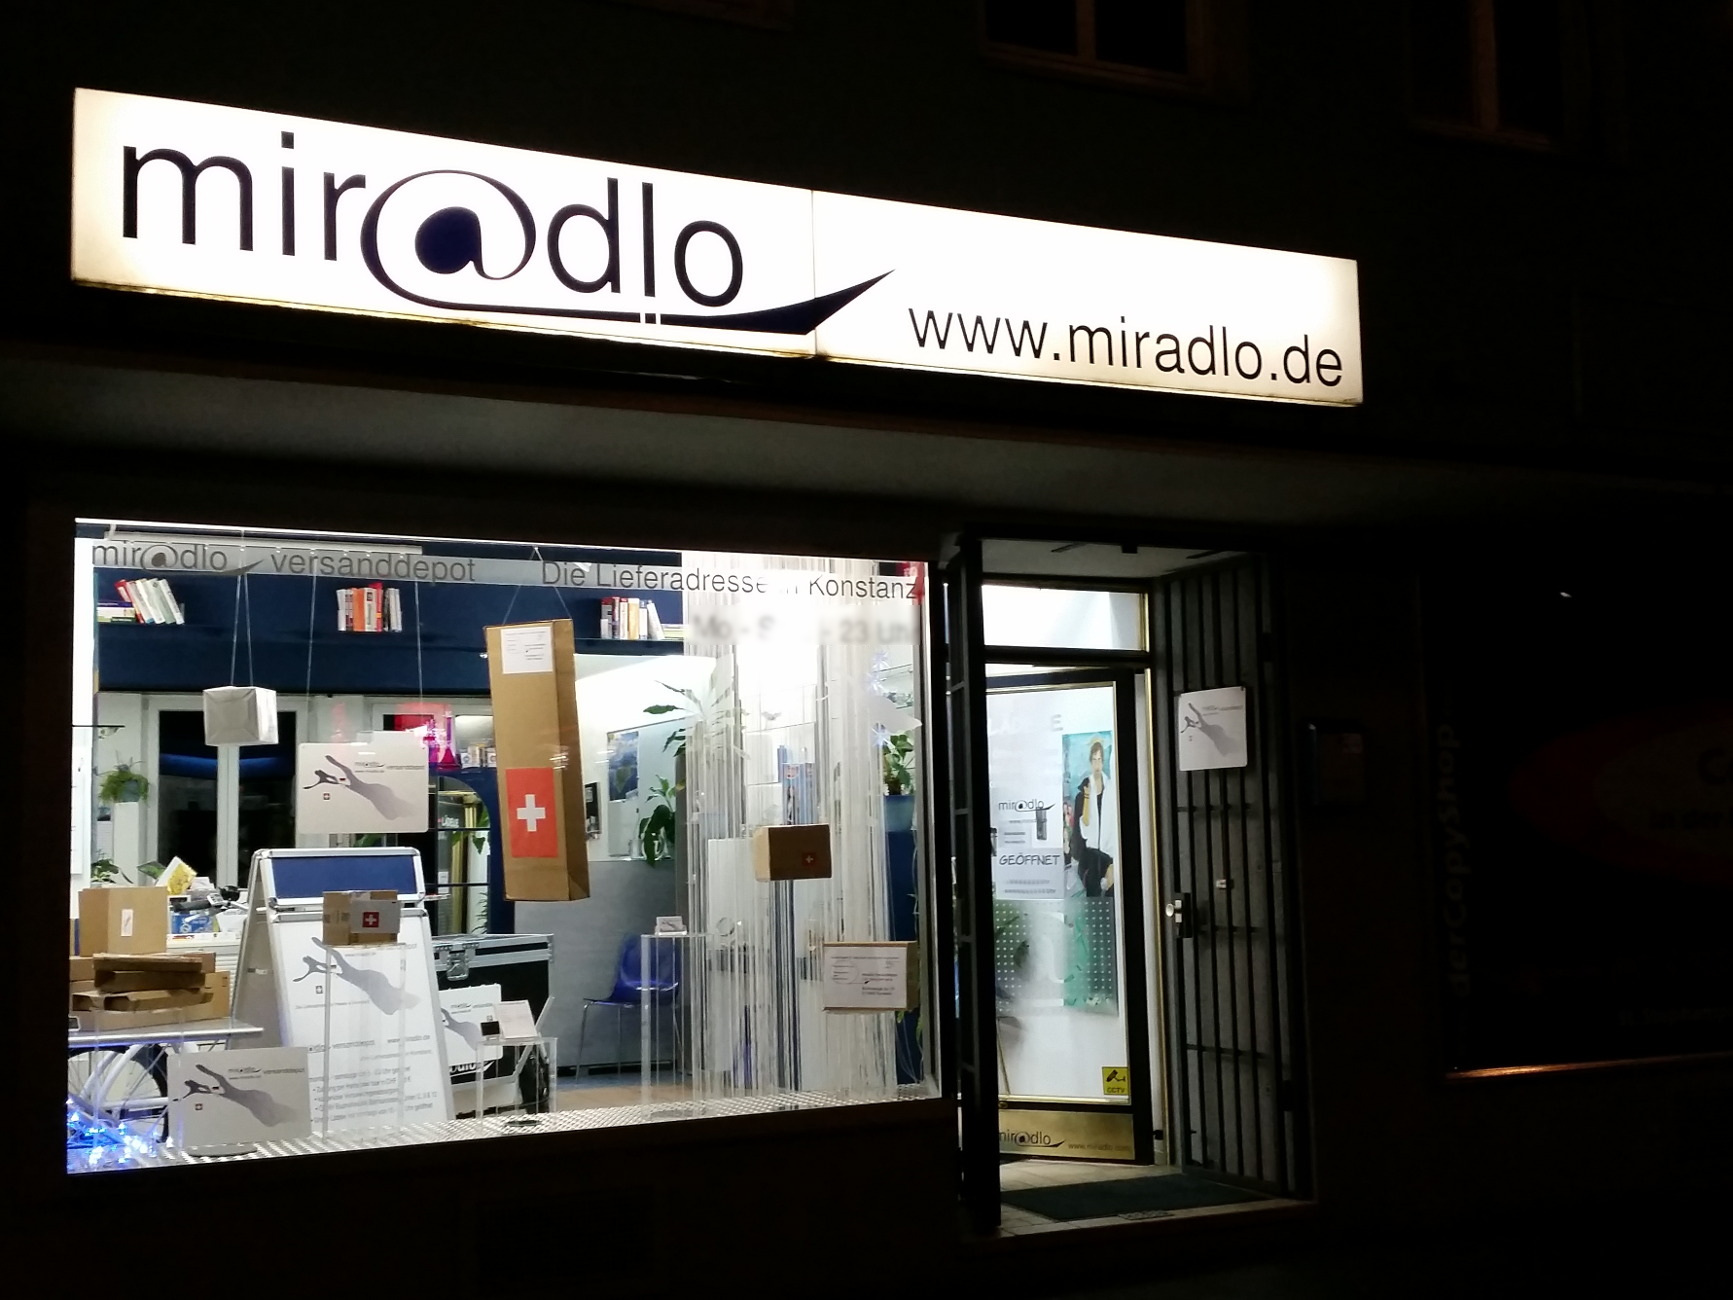 miradlo-Versanddepot - Die Lieferadresse in Konstanz - Schaufenster im Dunkeln mit Paketdekoration